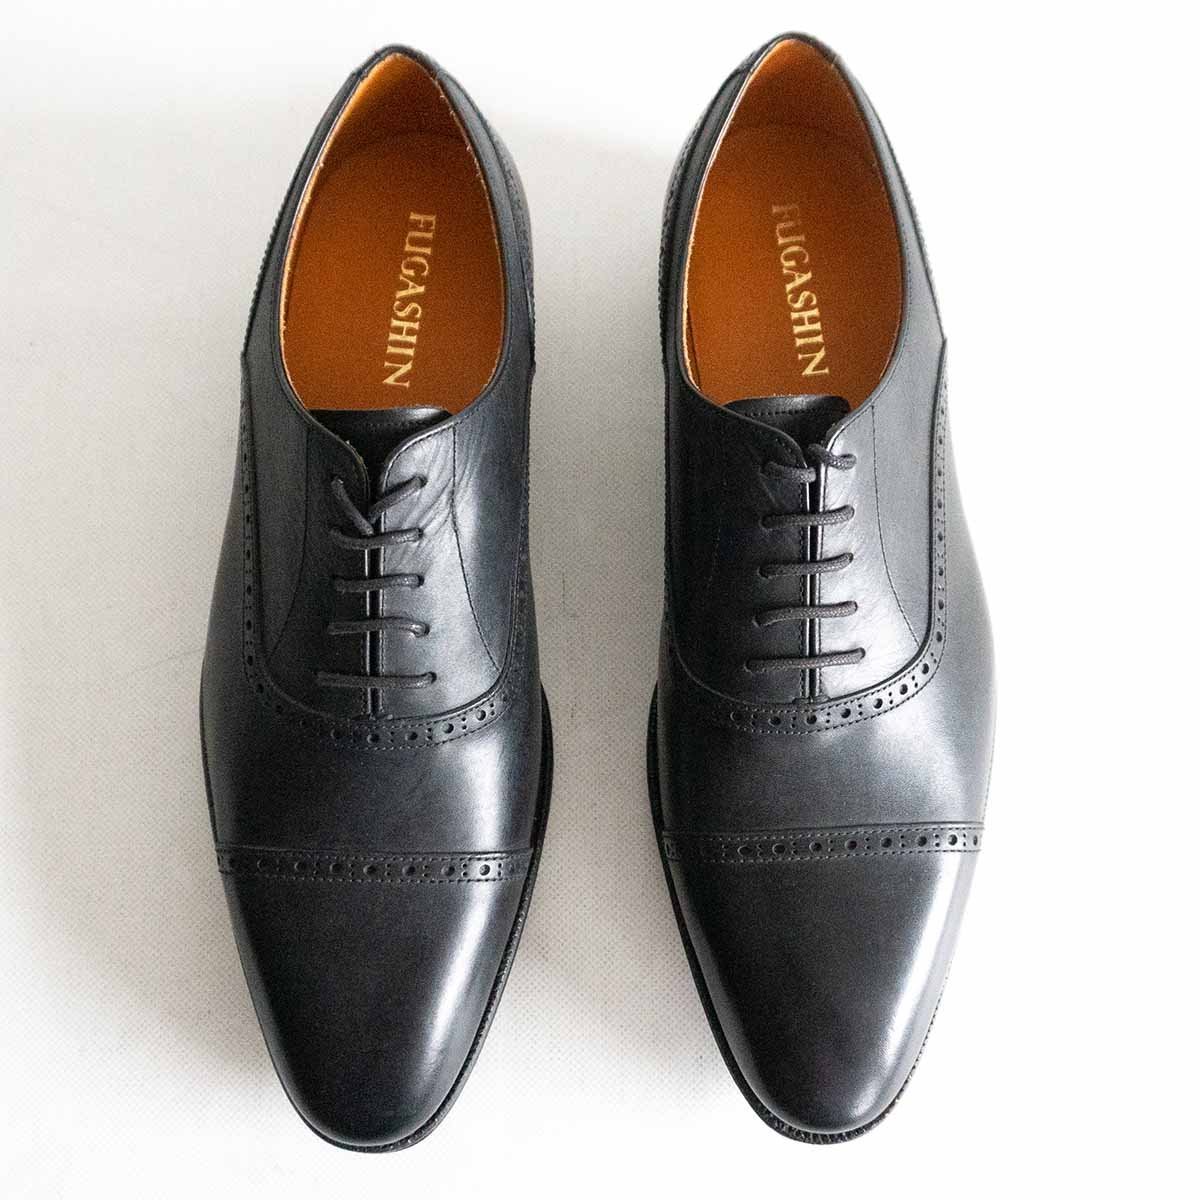 [ прекрасный товар ]FUGASHIN способ . сердце [ дырокол do колпак tou кожа обувь ]7 распорка chip черный бизнес обувь кожа обувь сделано в Японии 2402306